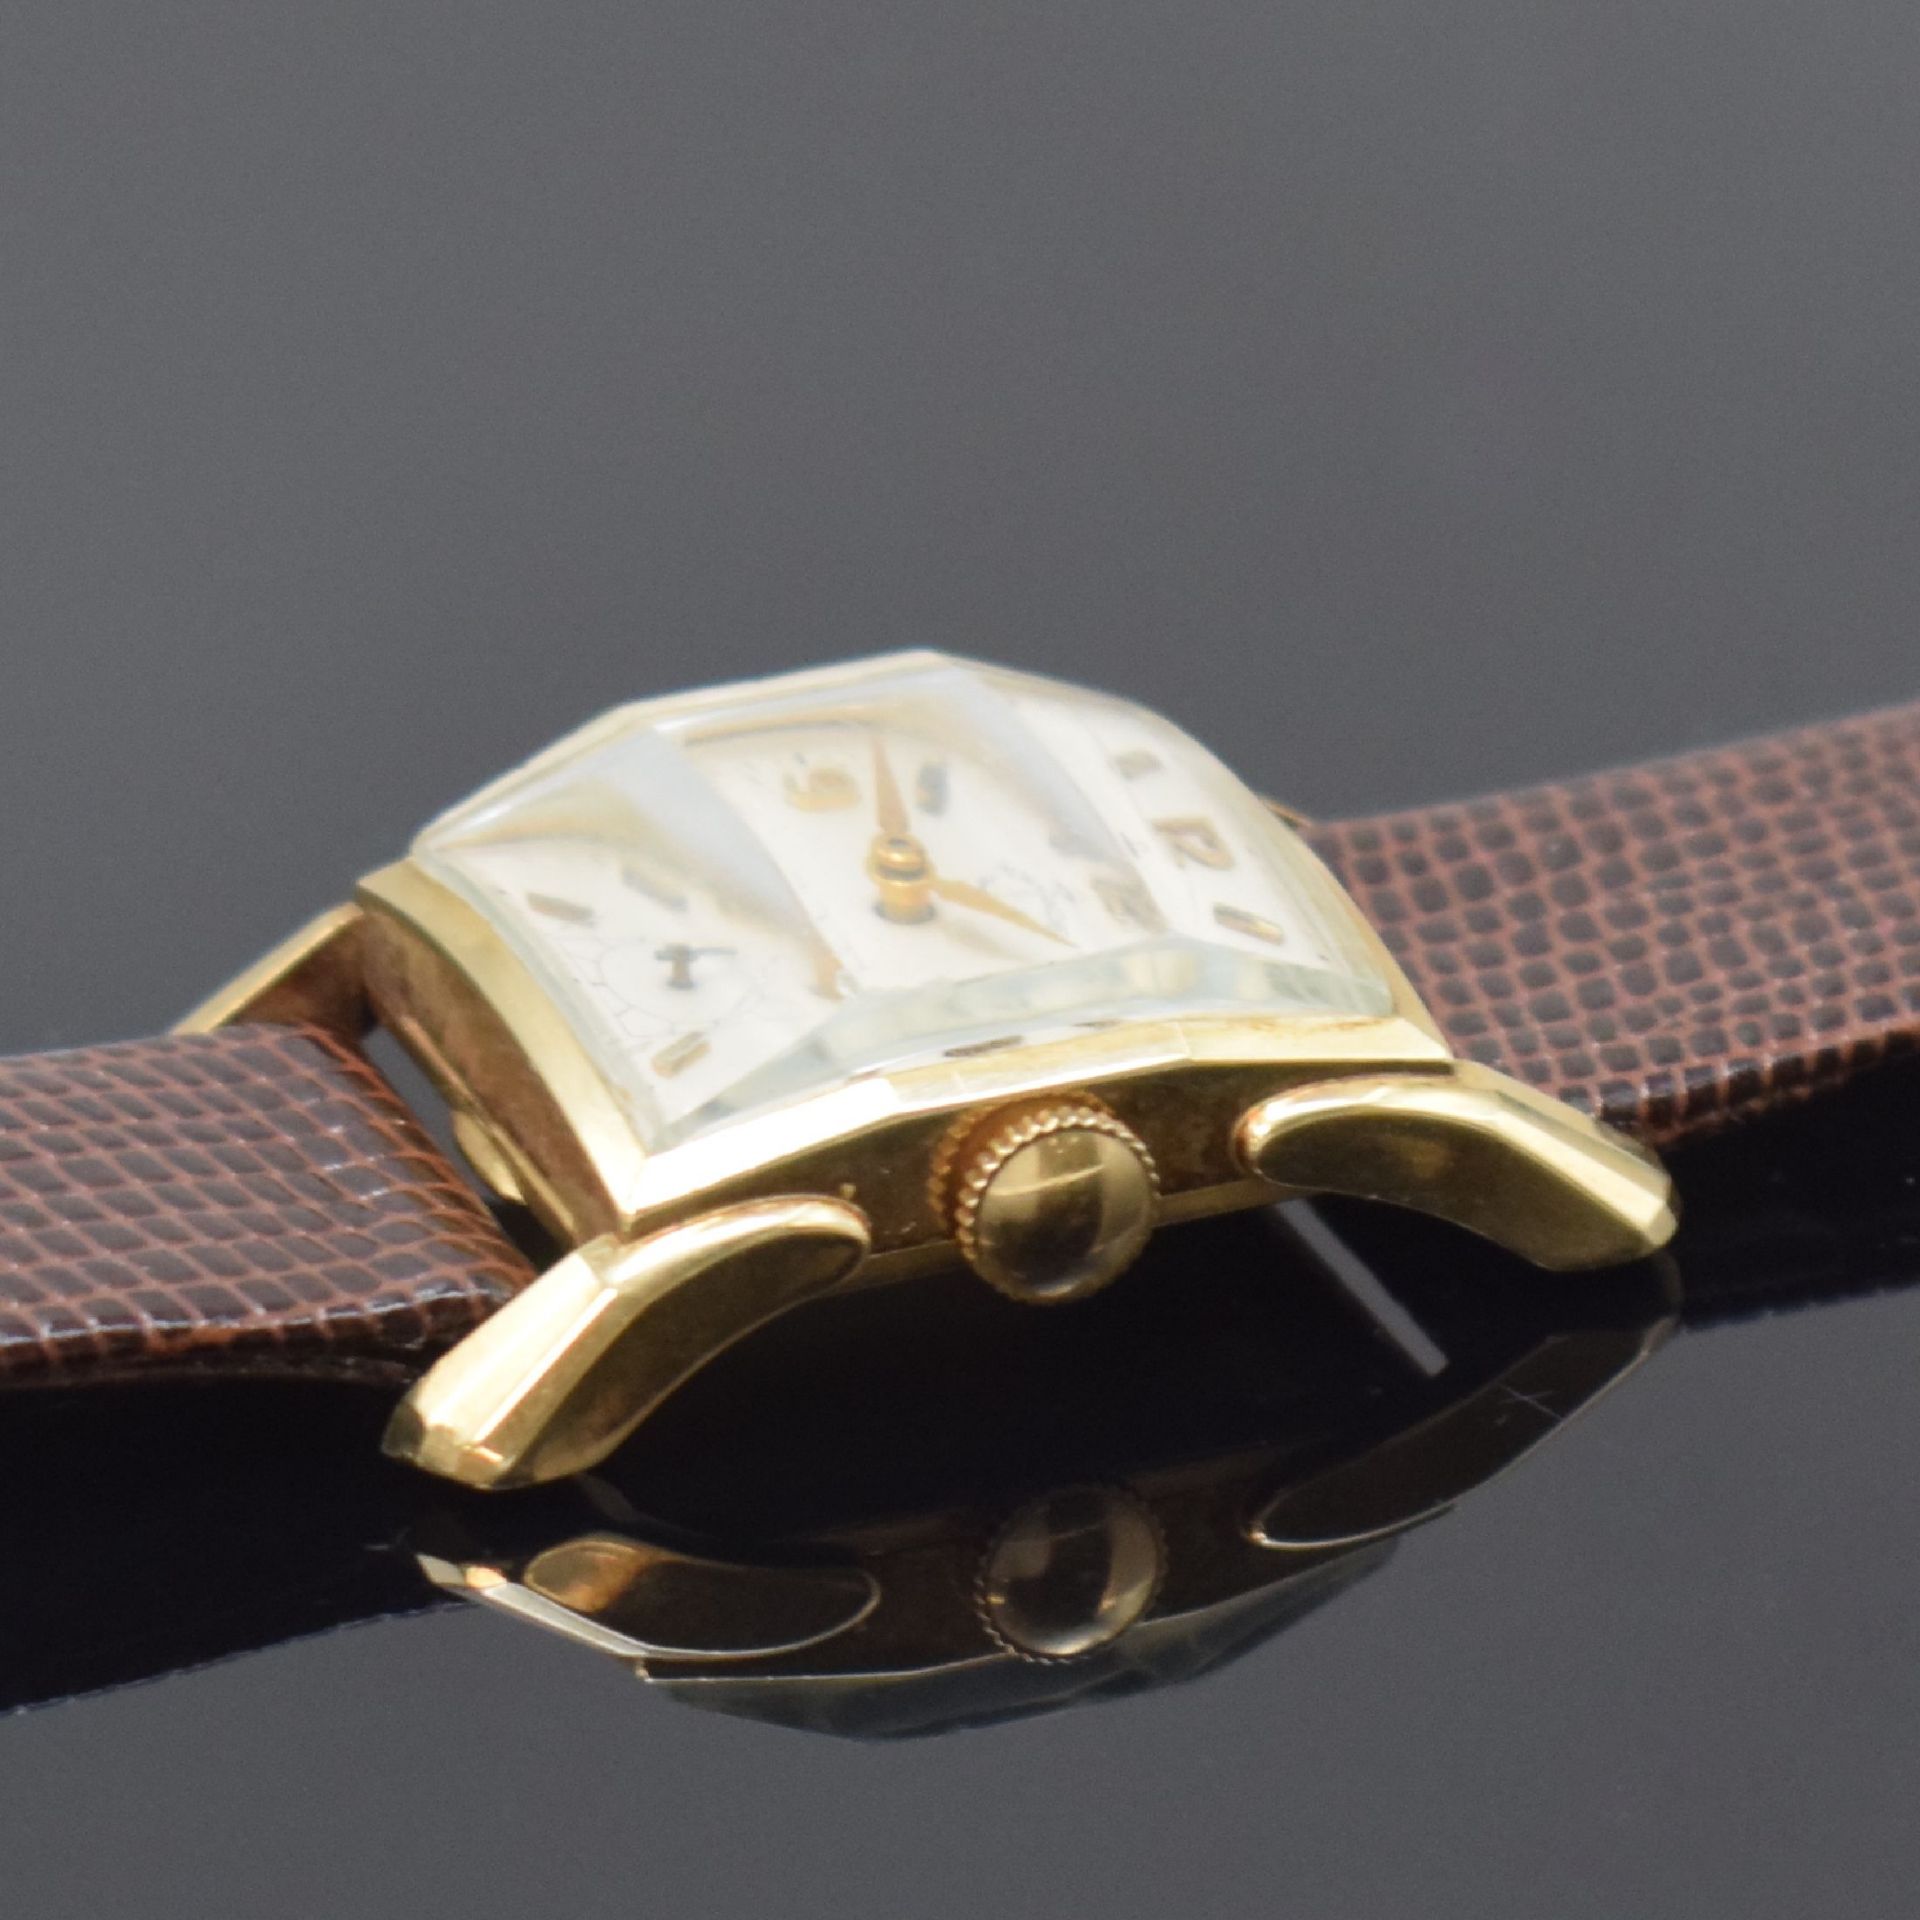 NORMANDIE rechteckige Armbanduhr in 14k Gelbgold, Schweiz - Image 3 of 6